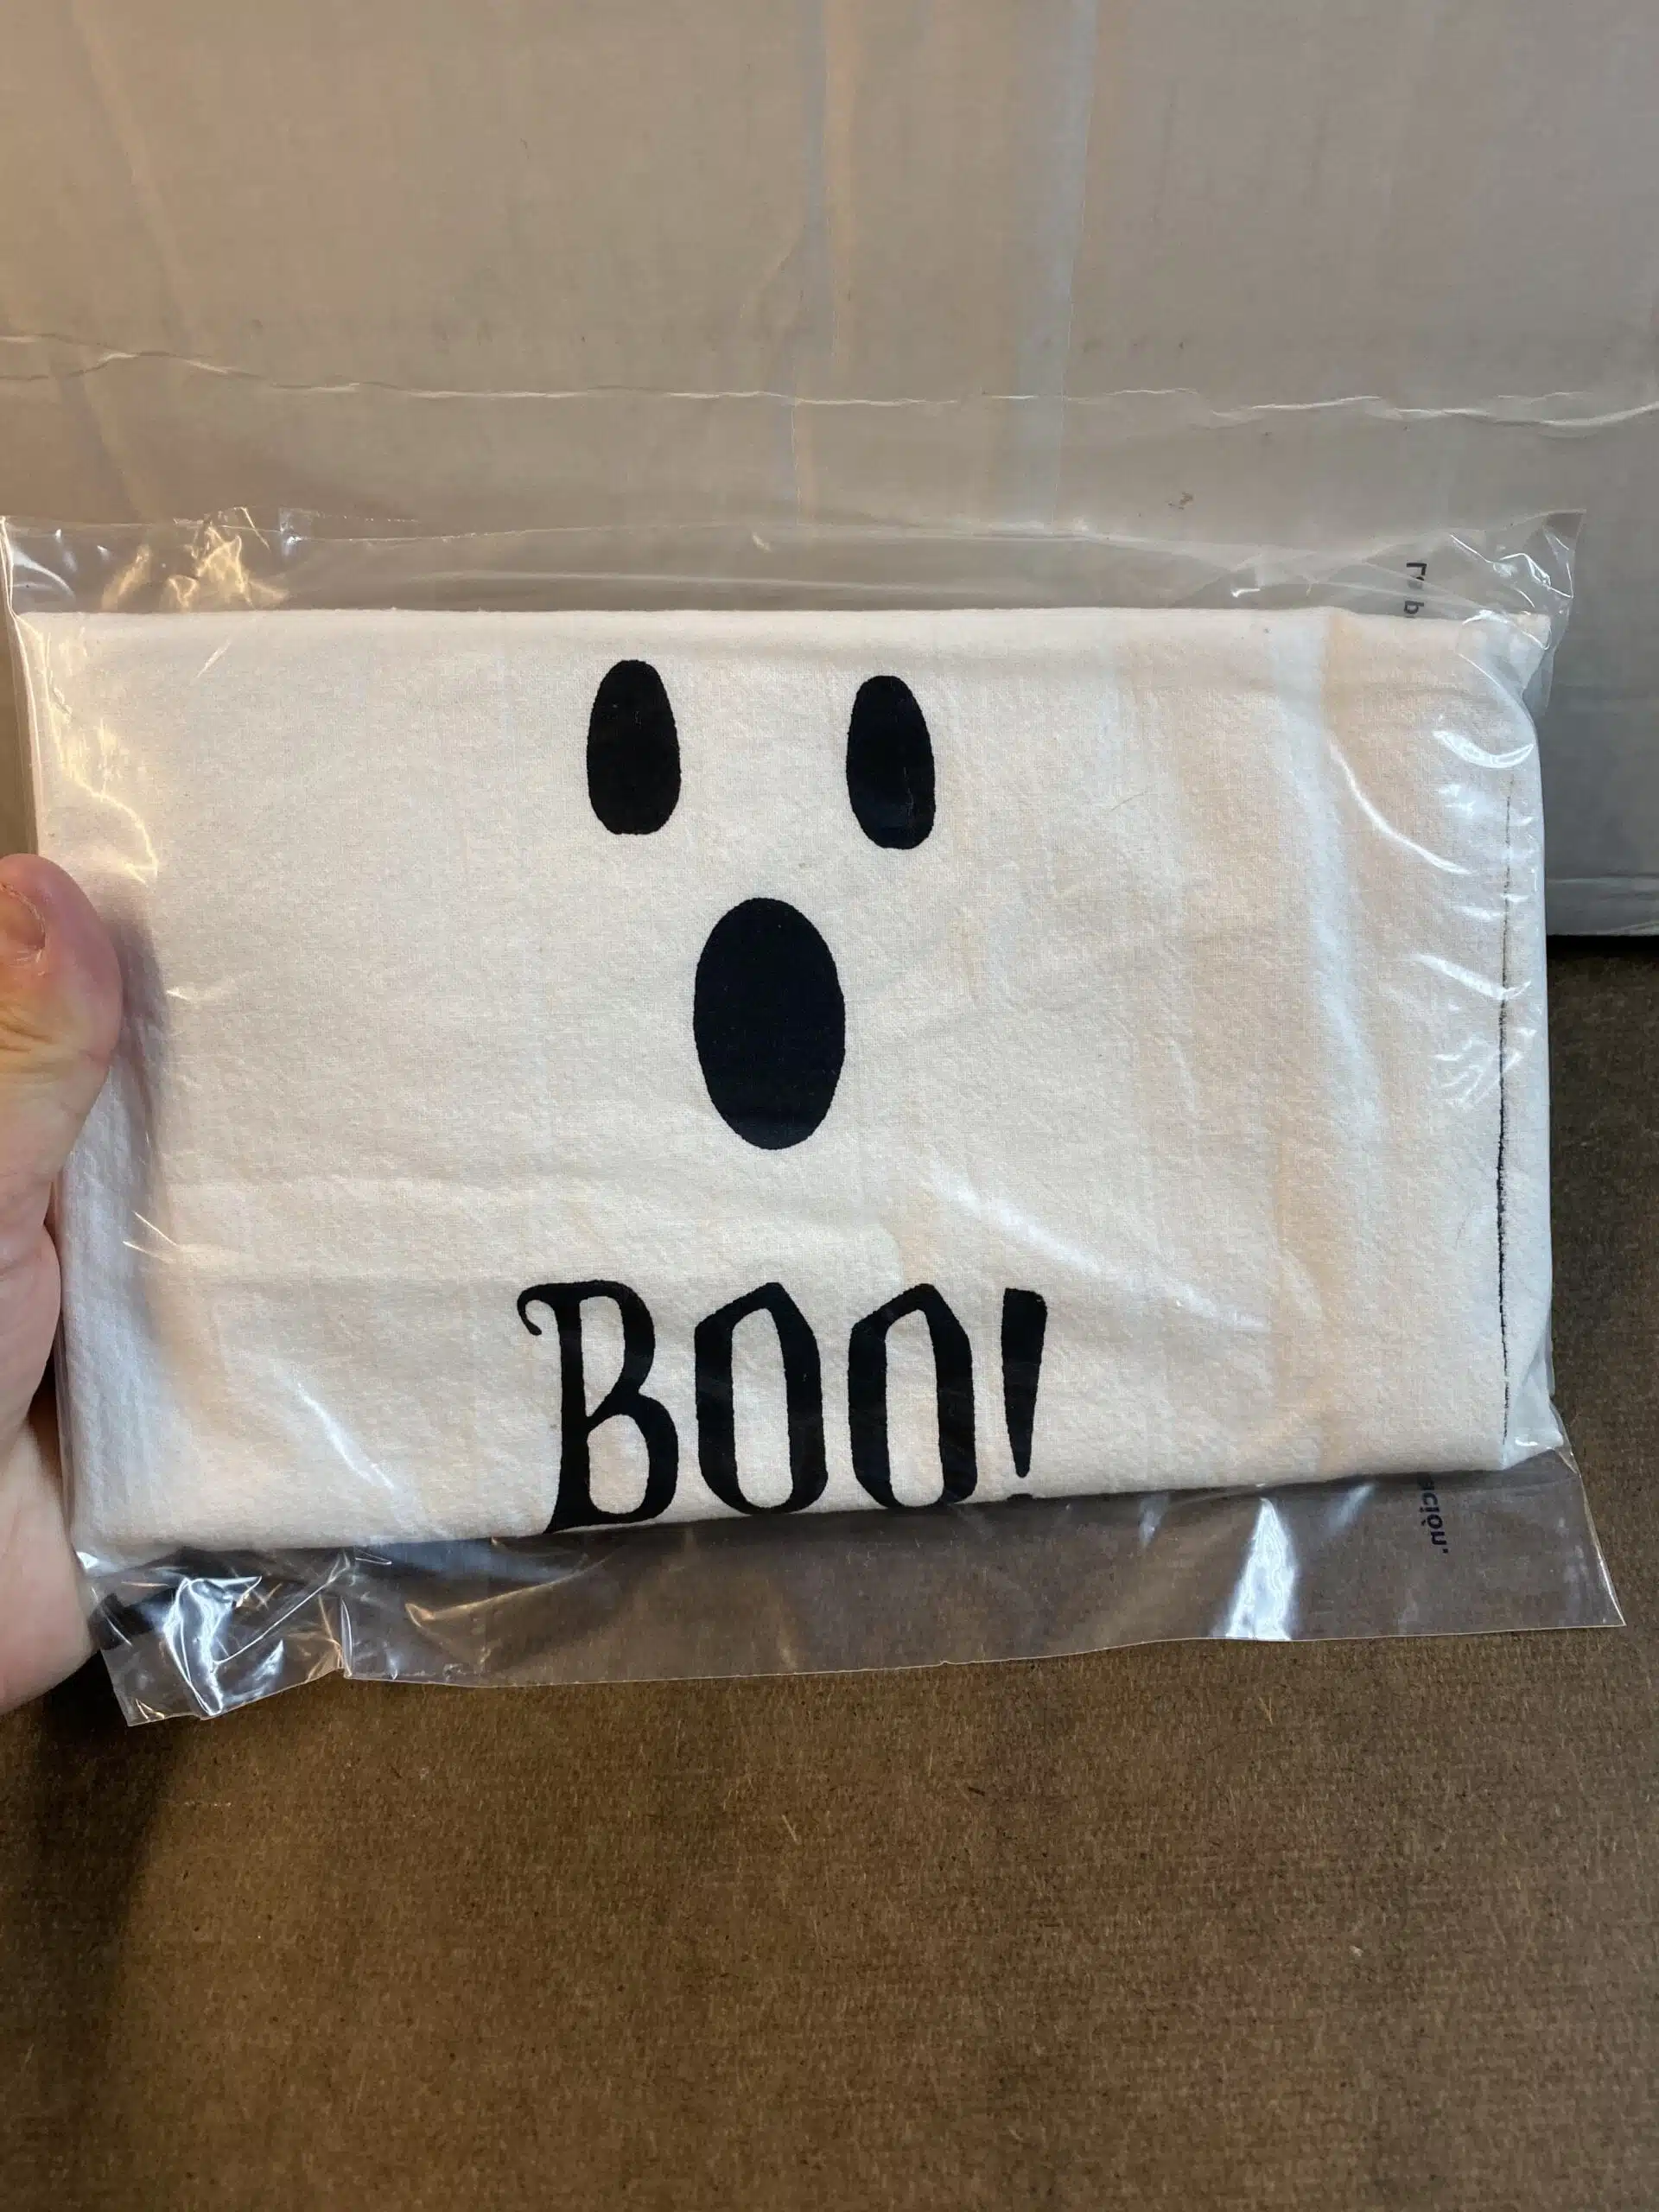 Scary Ghost Tea Towel Seconds Sale